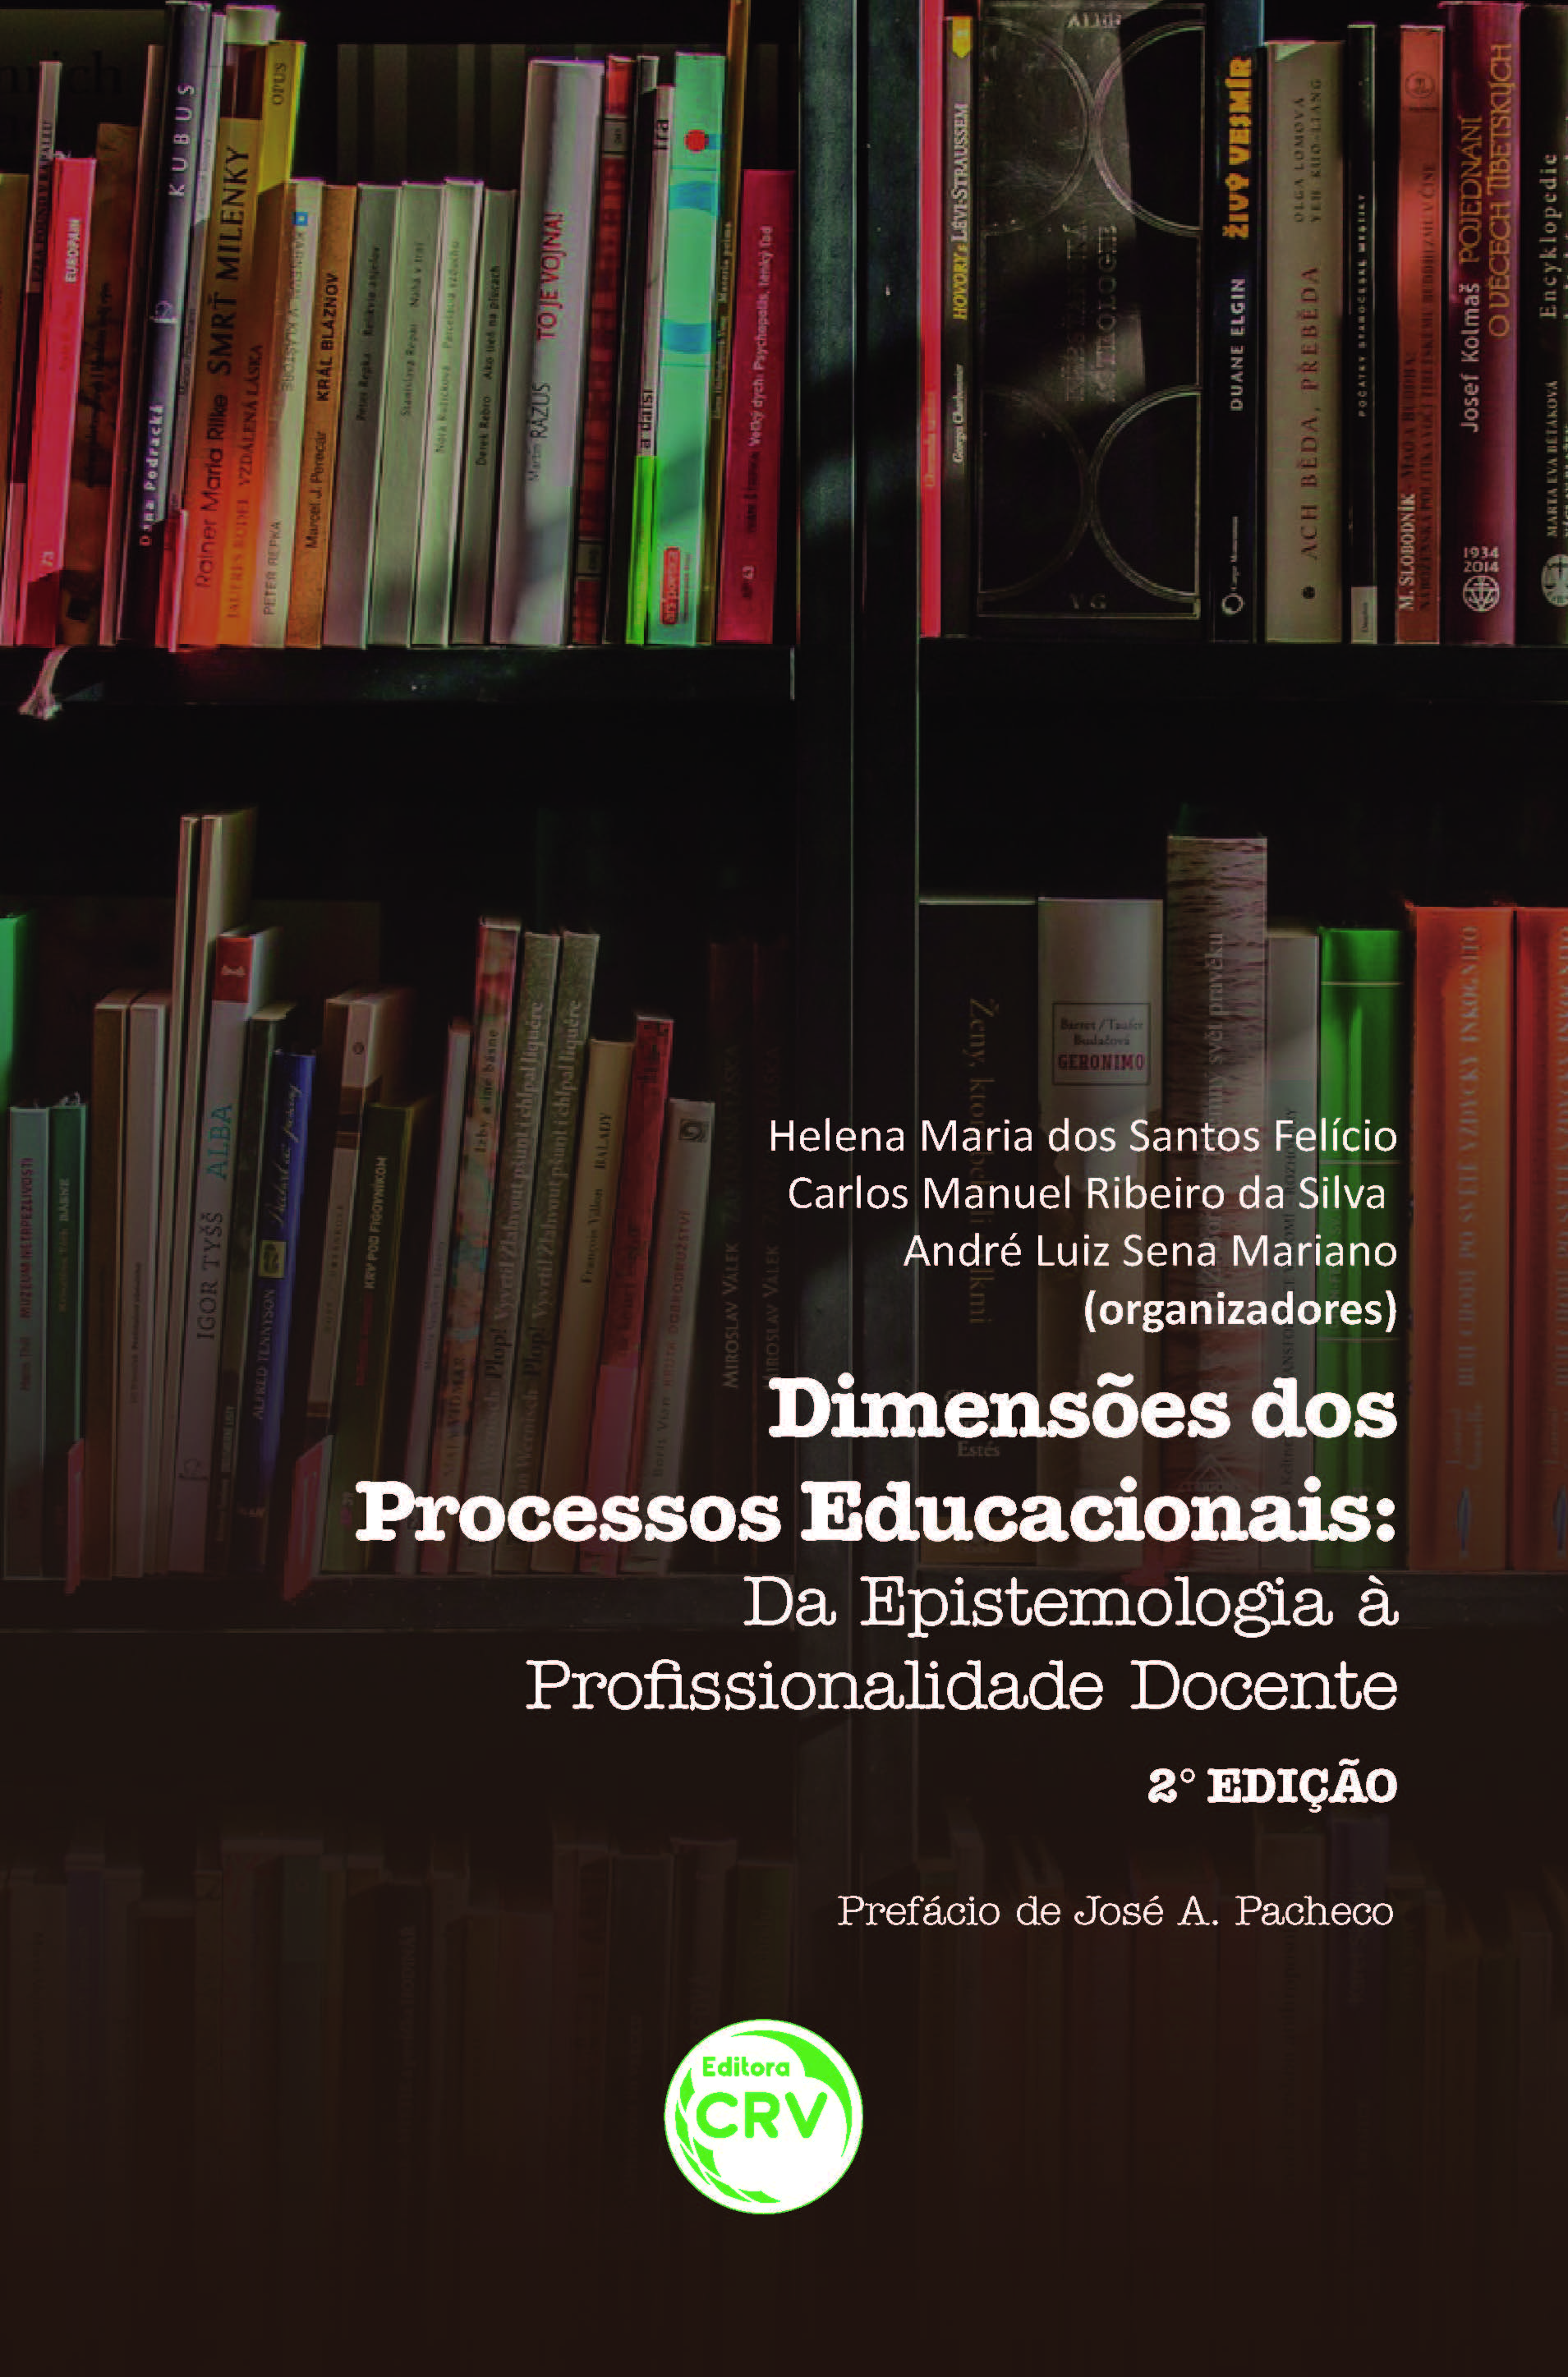 DIMENSÕES DOS PROCESSOS EDUCACIONAIS:<br>da epistemologia à profssionalidade docente - 2ª Edição